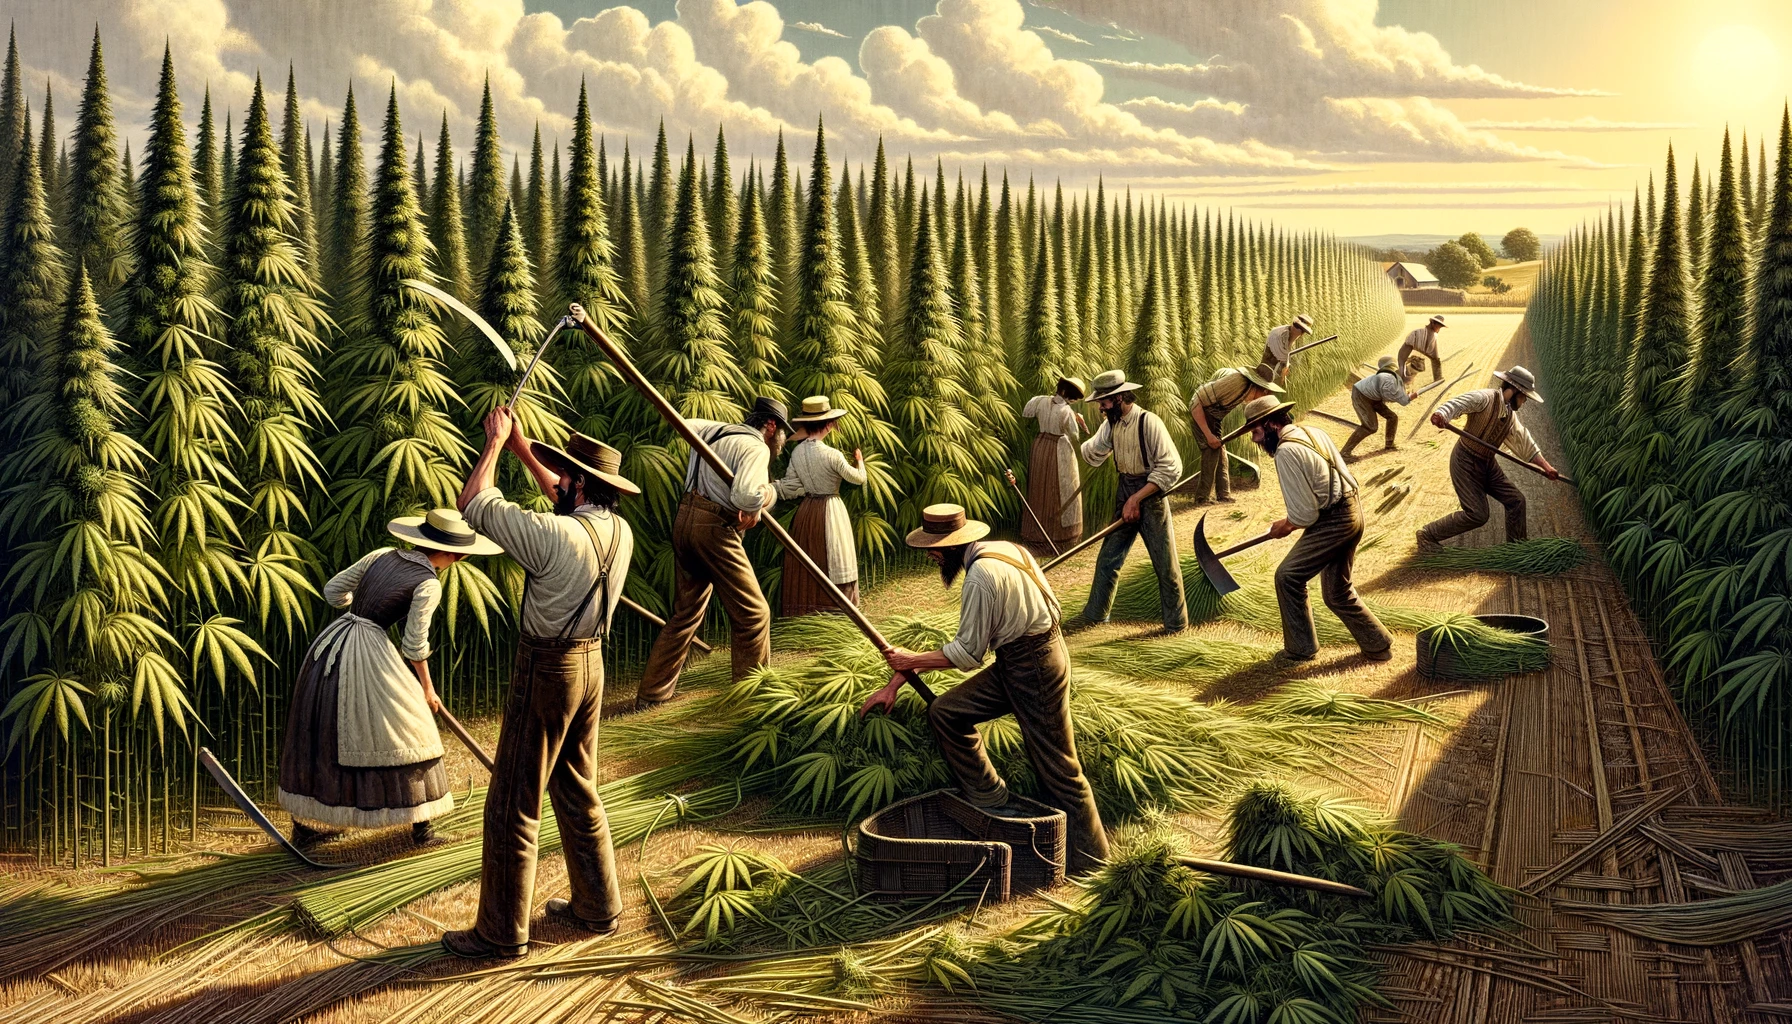 1800s farmers harvesting hemp.